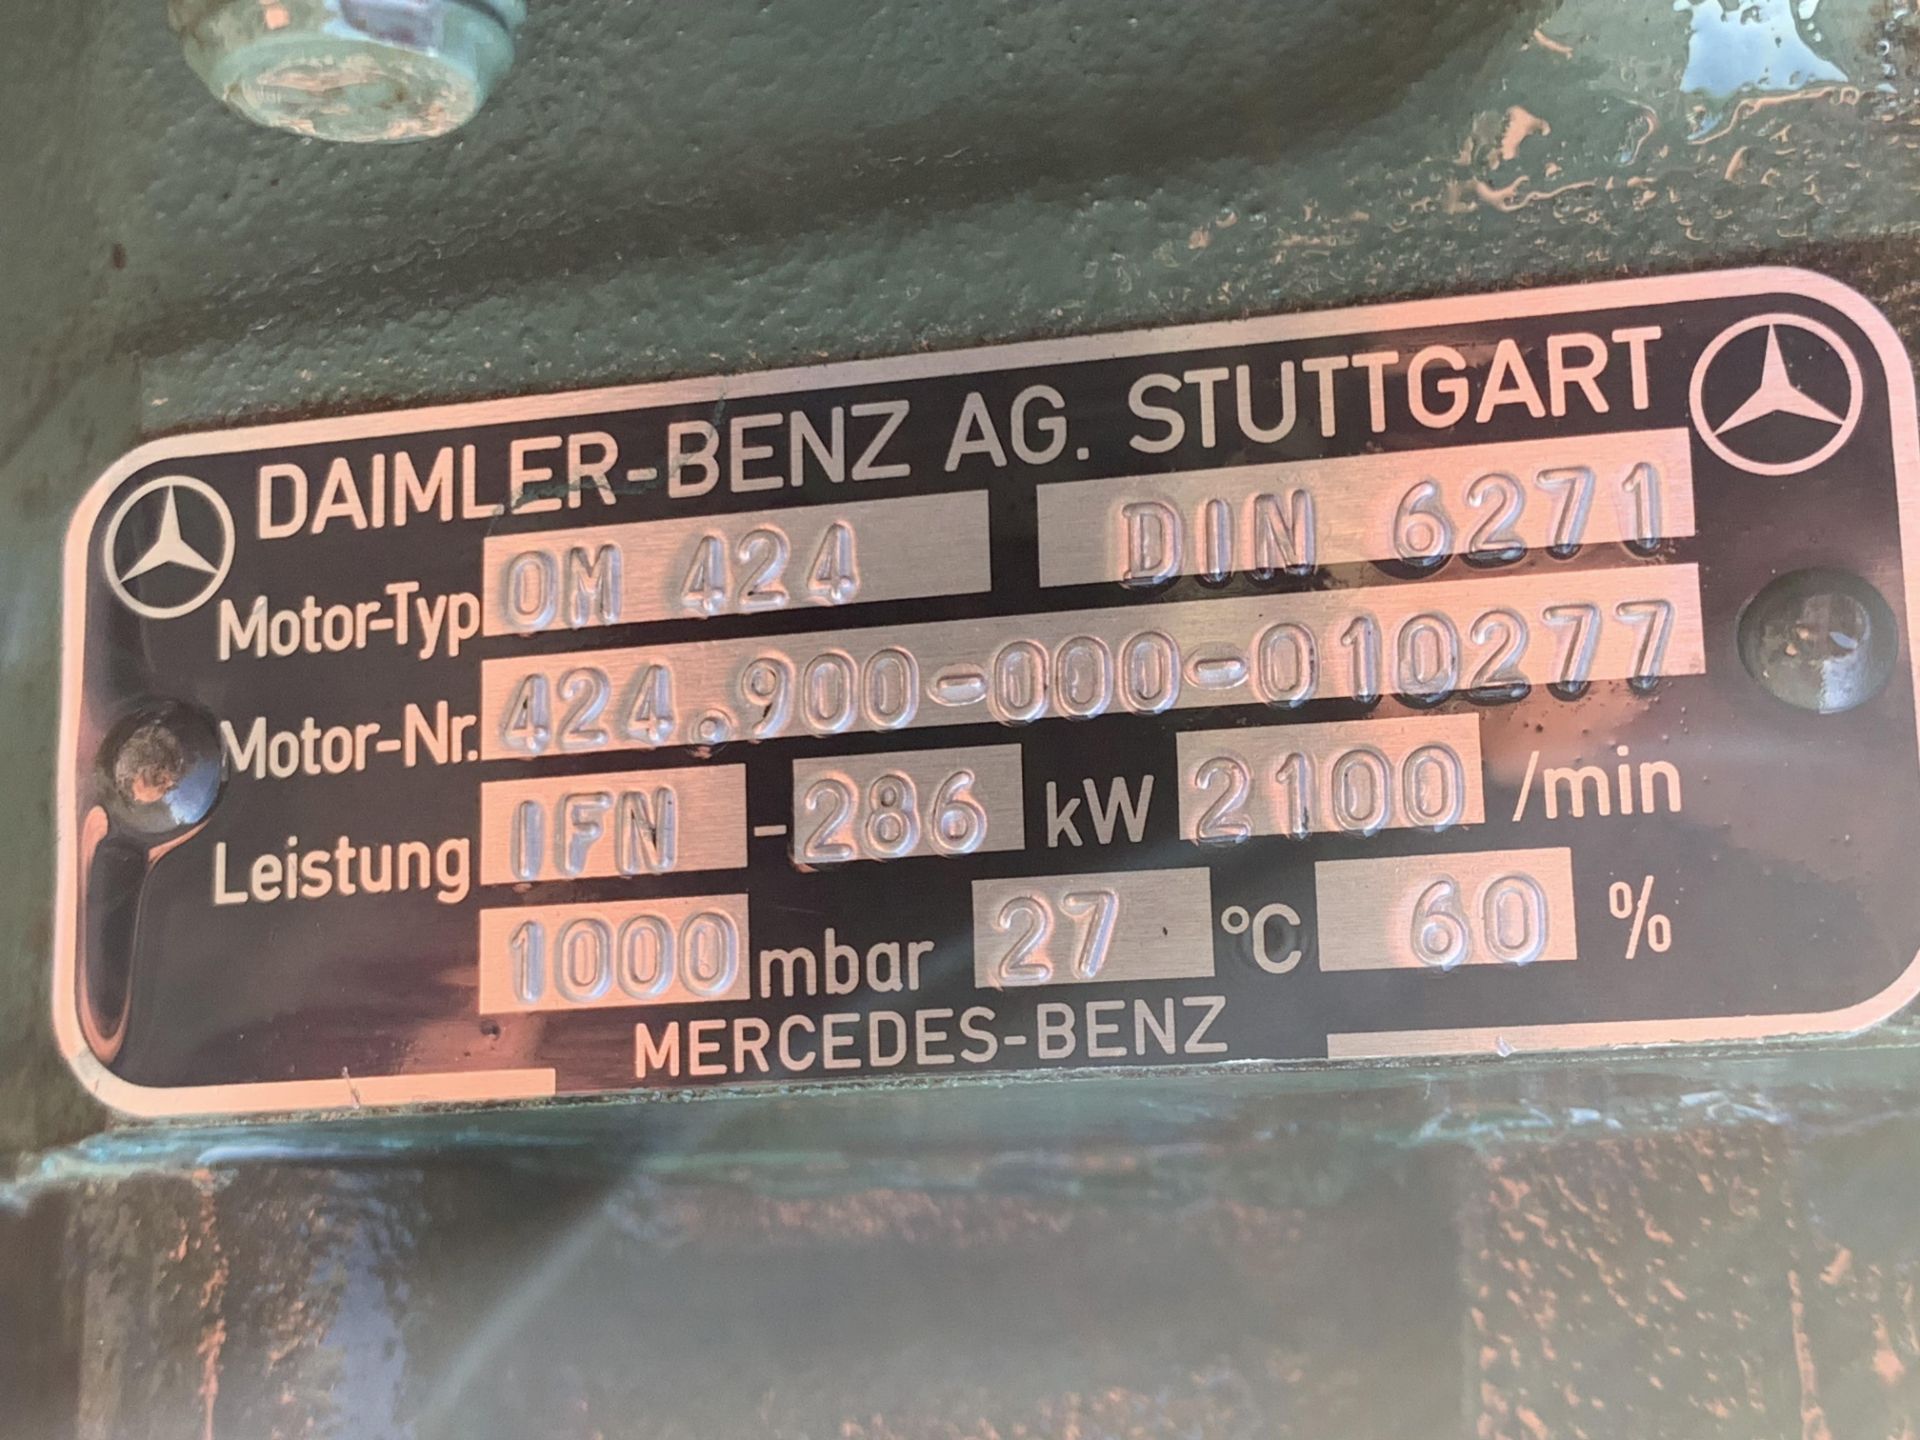 Mercedes OM424 383hp Diesel Engine Low hours - Image 5 of 5